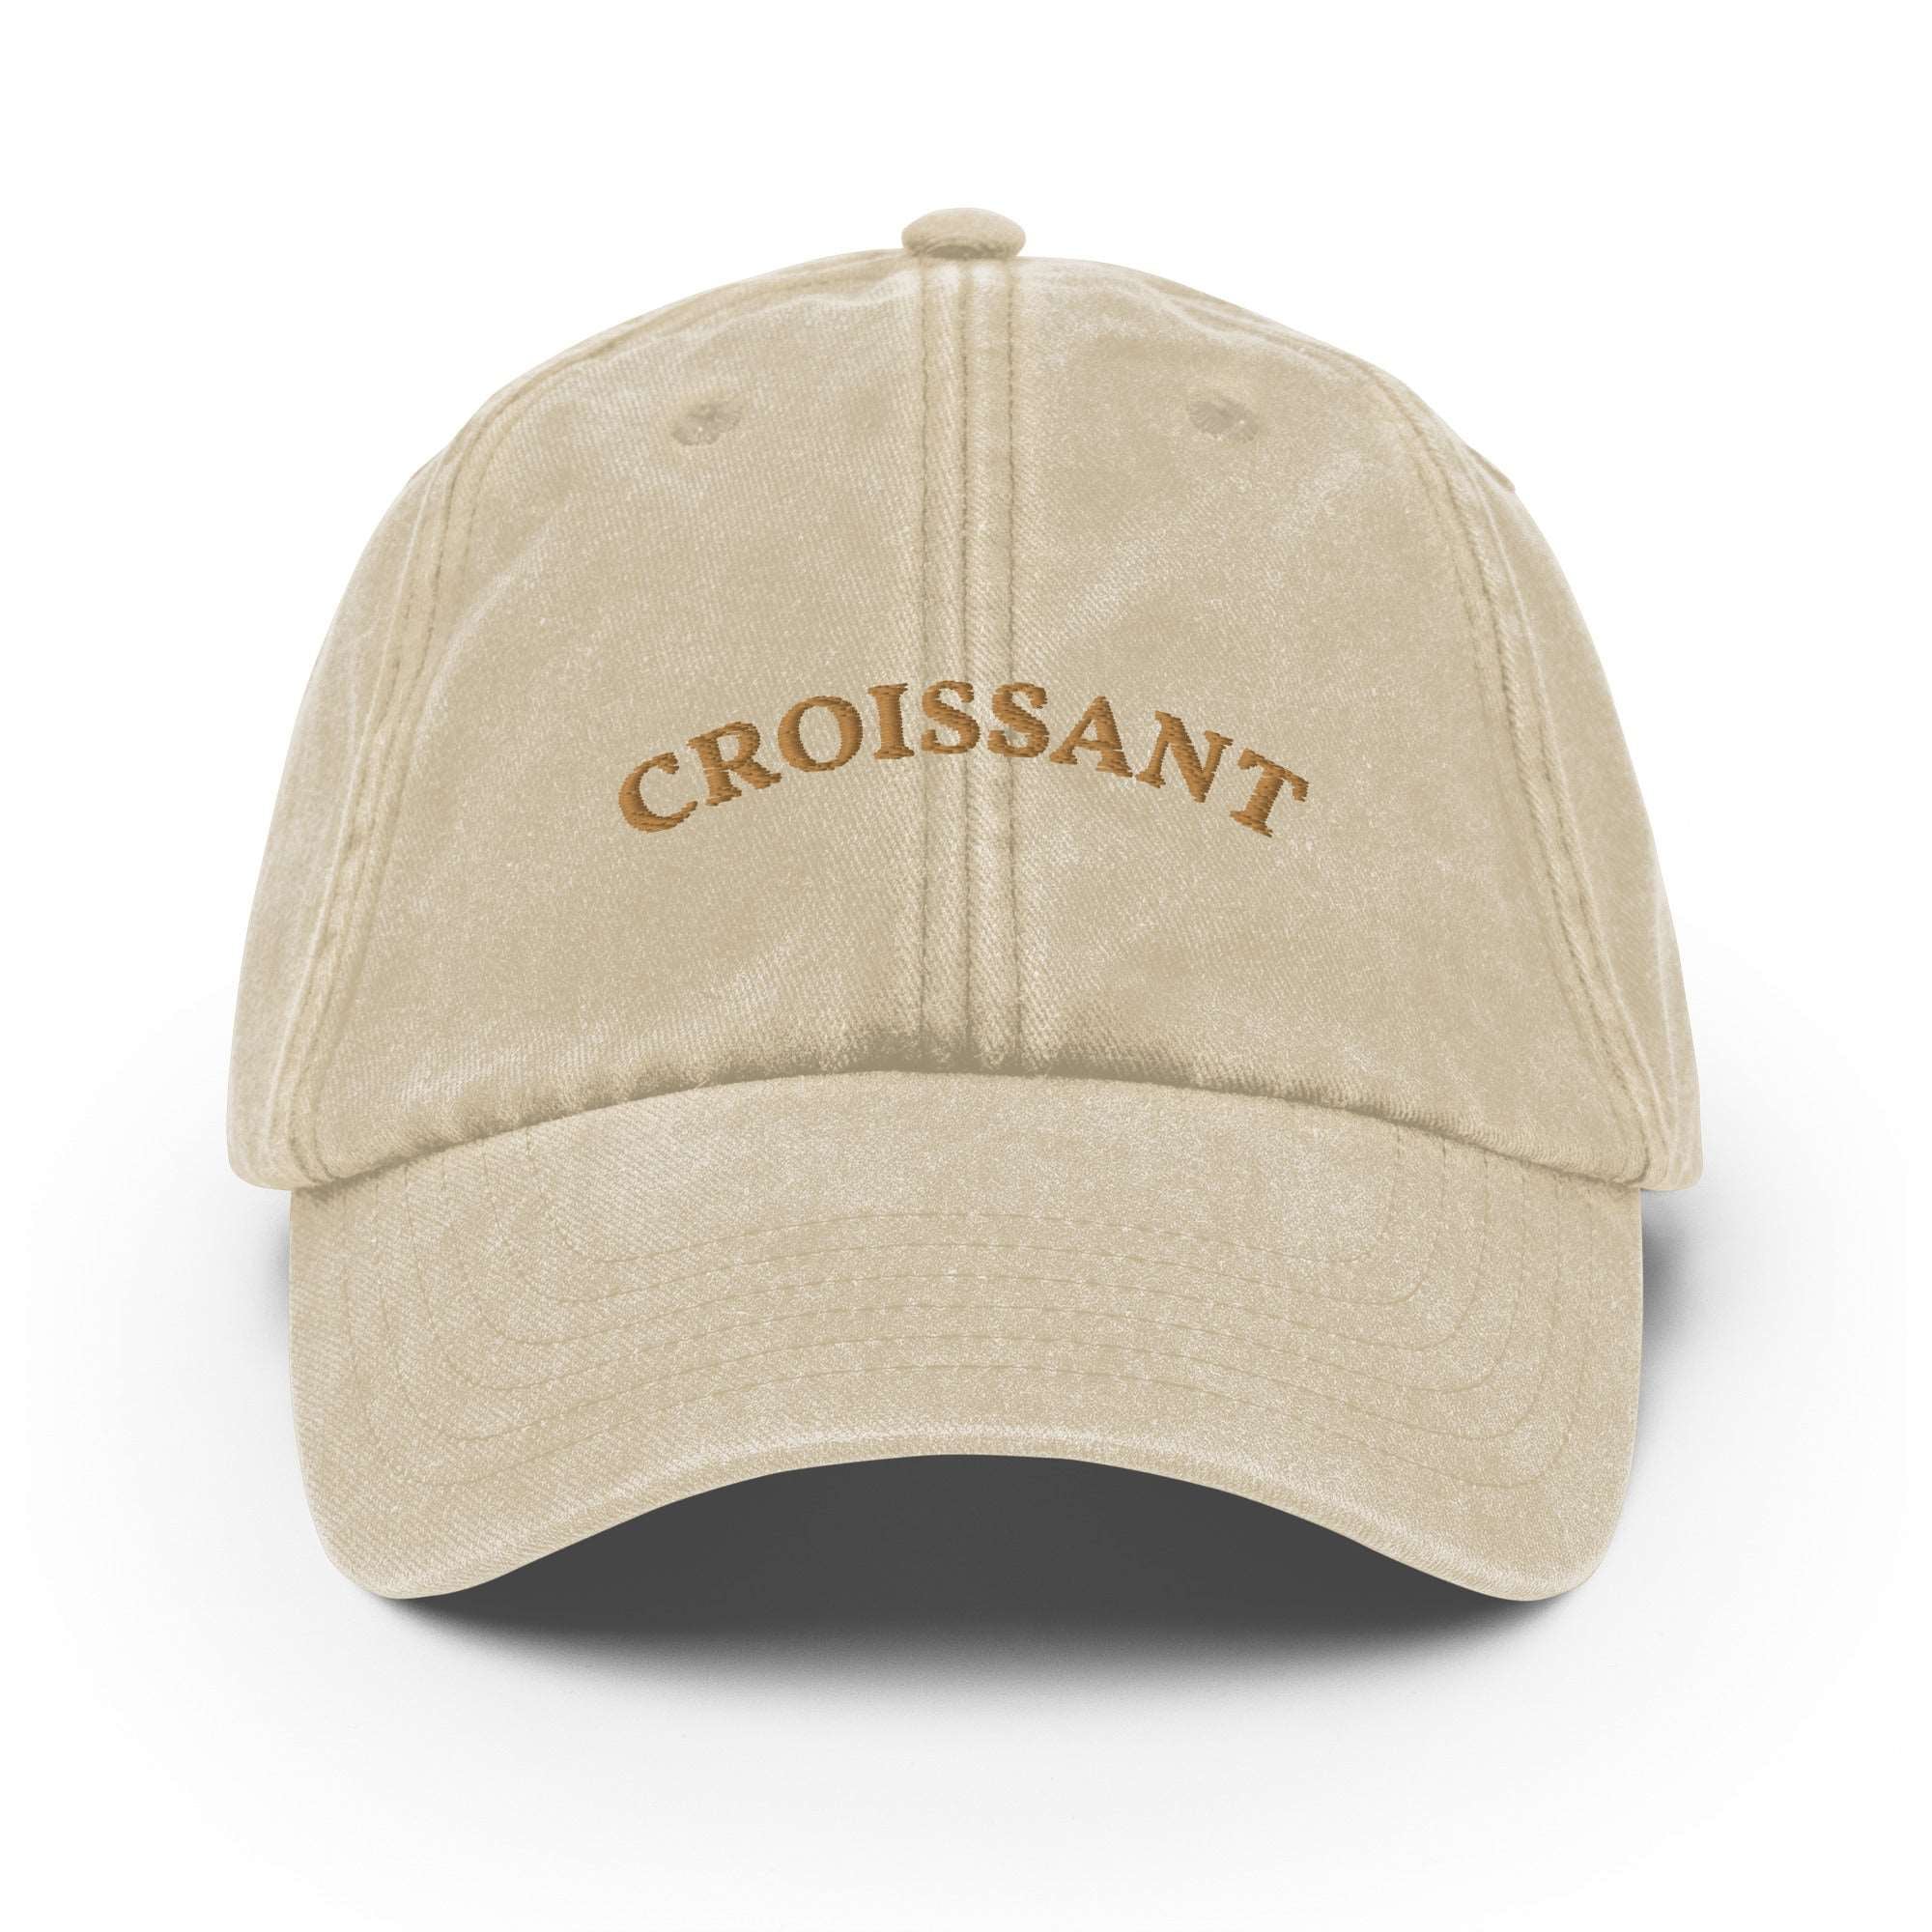 Croissant Vintage Cap - The Refined Spirit